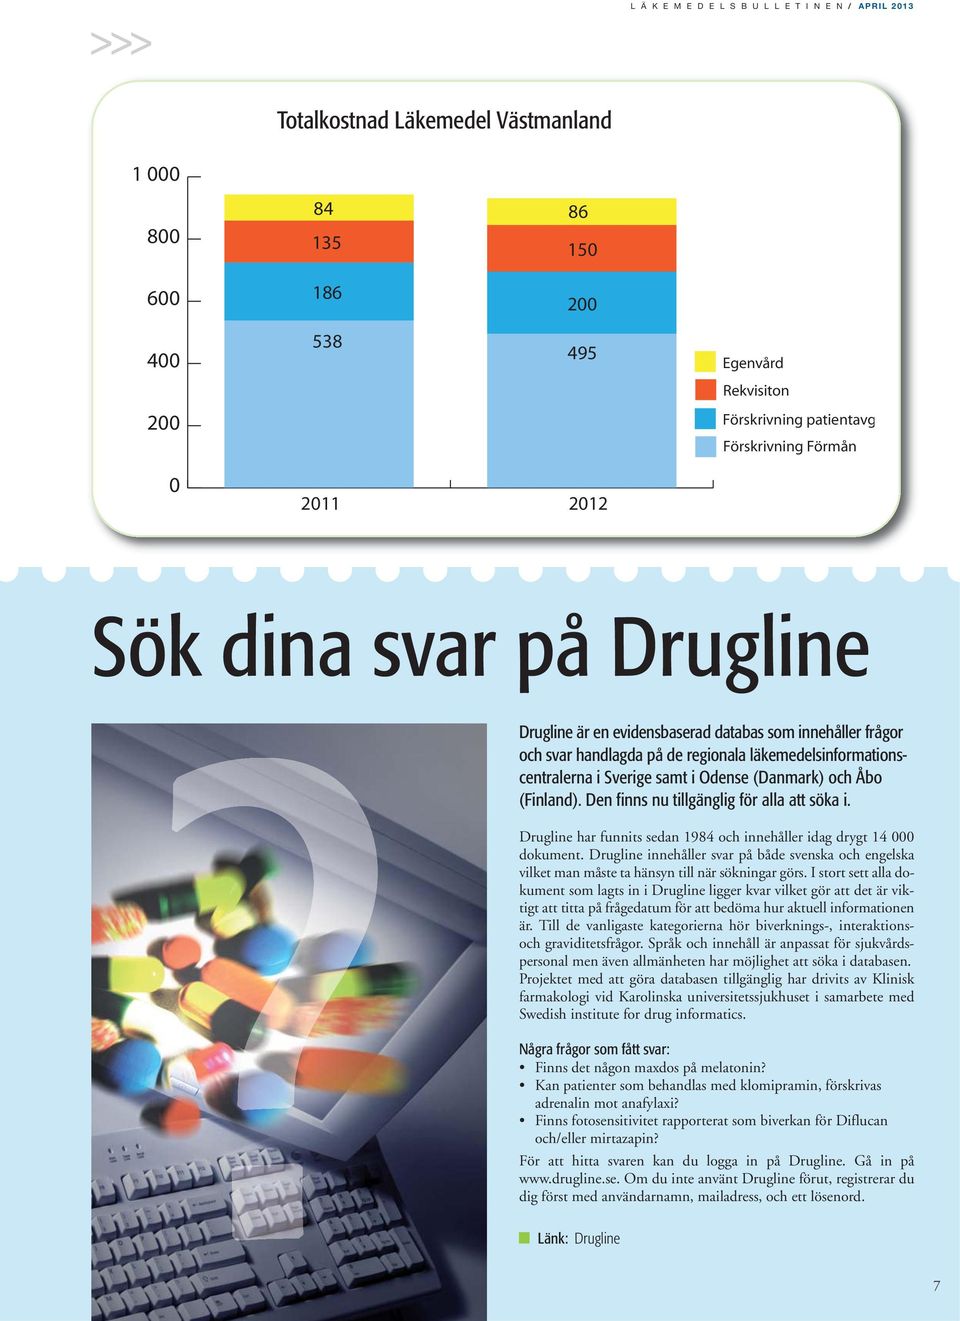 samt i Odense (Danmark) och Åbo (Finland). Den finns nu tillgänglig för alla att söka i. Drugline har funnits sedan 1984 och innehåller idag drygt 14 000 dokument.